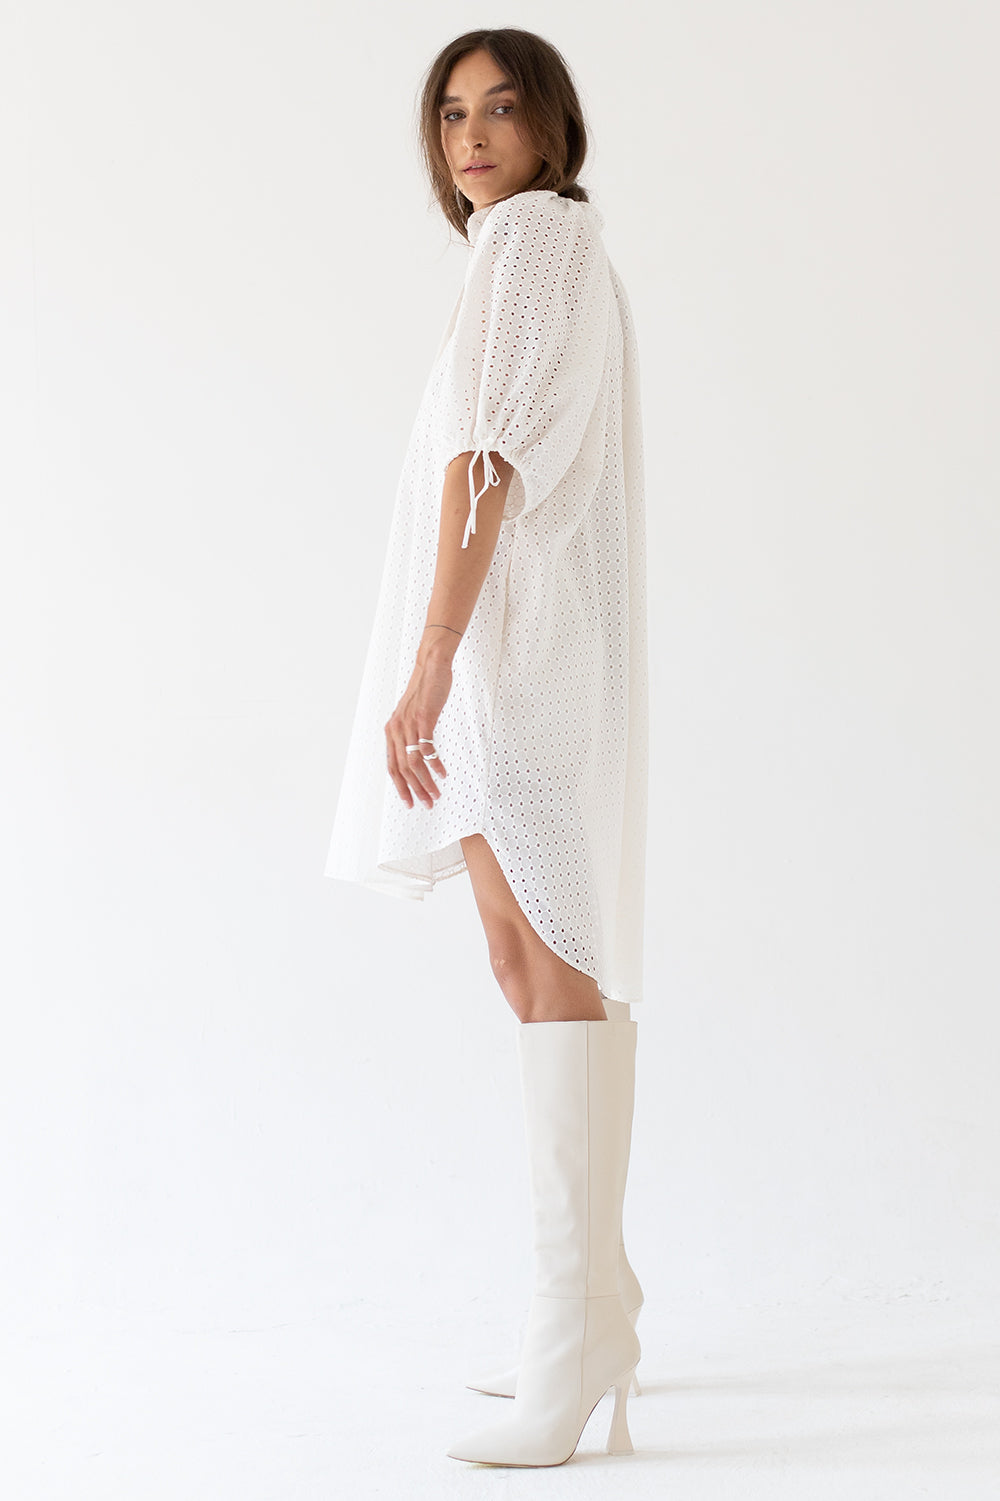 DRESS "BALOON" MADEIRA - WHITE